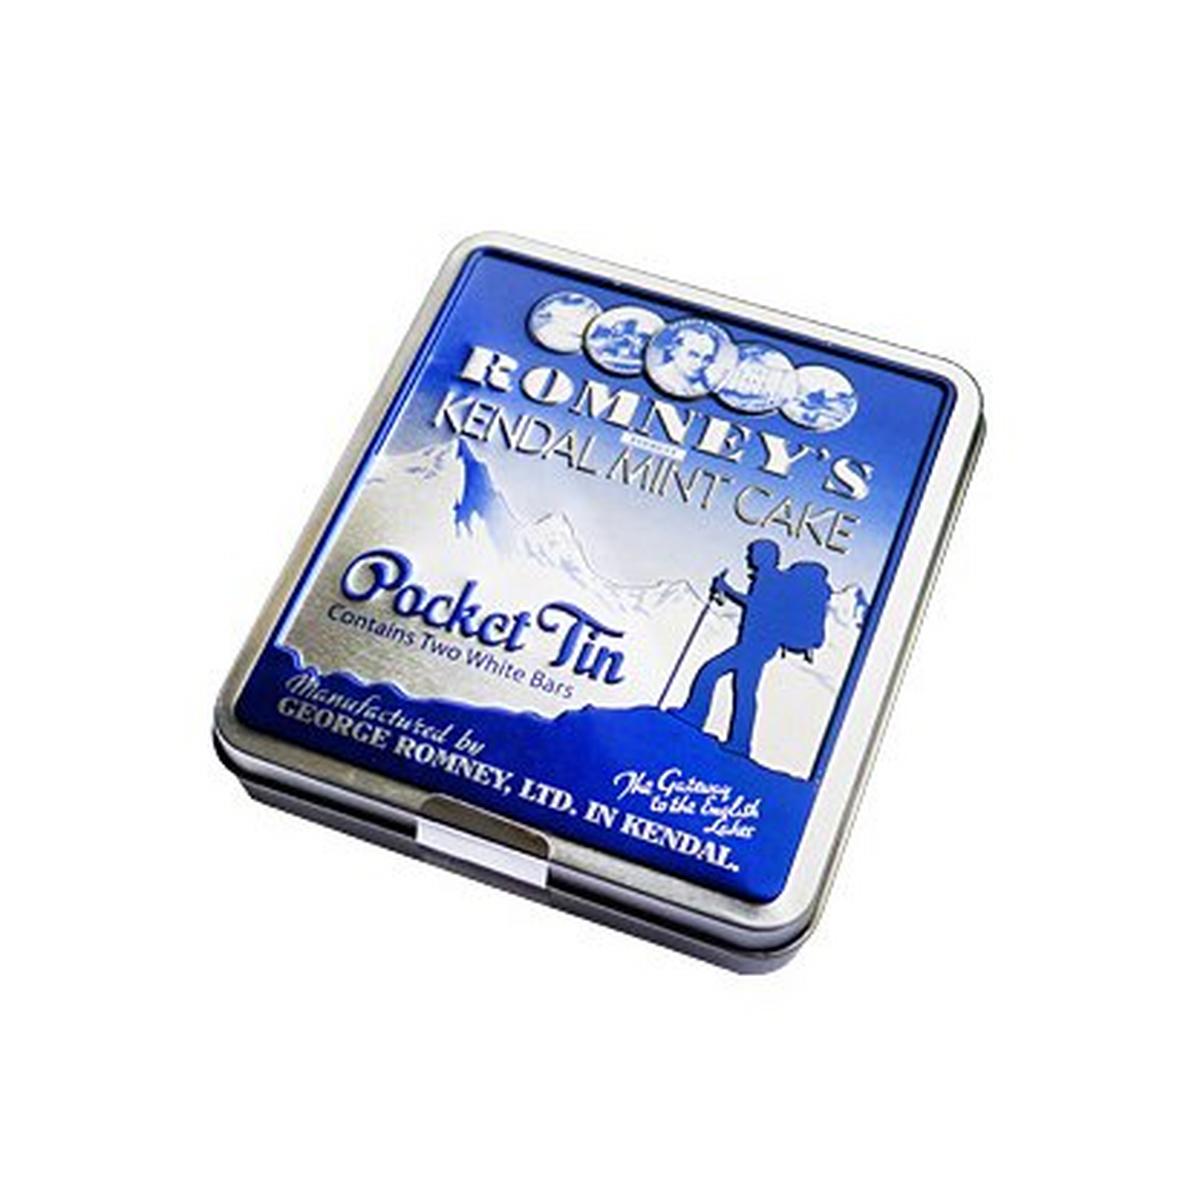 Romneys Kendal Mint Cake Pocket Tin - 170g